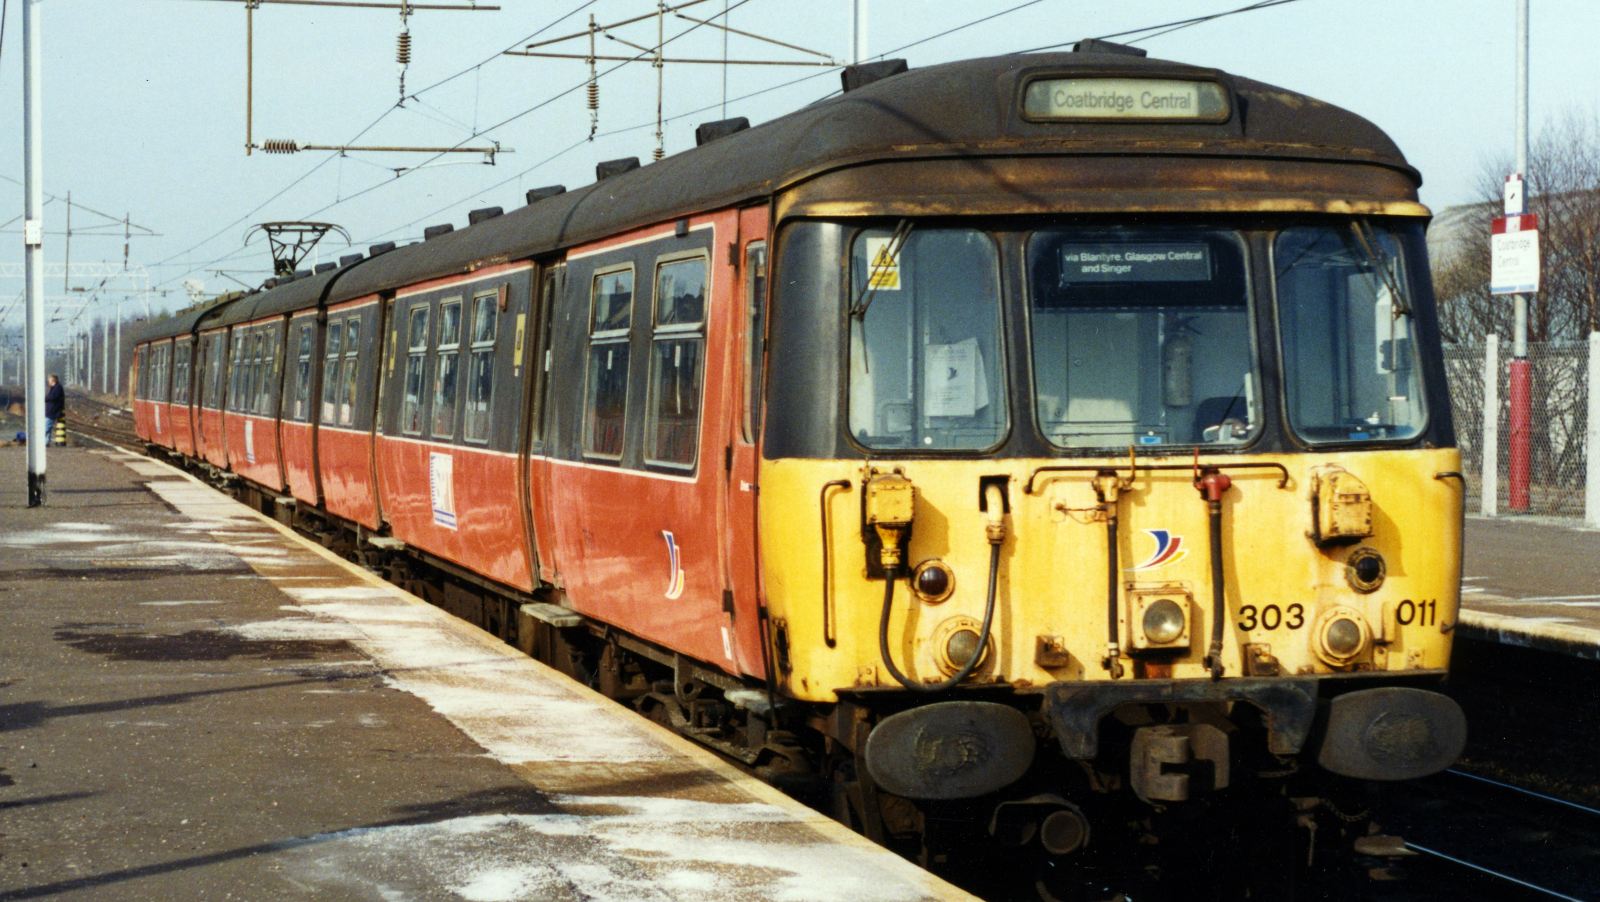 303011 circa 1999 at Coatbridge